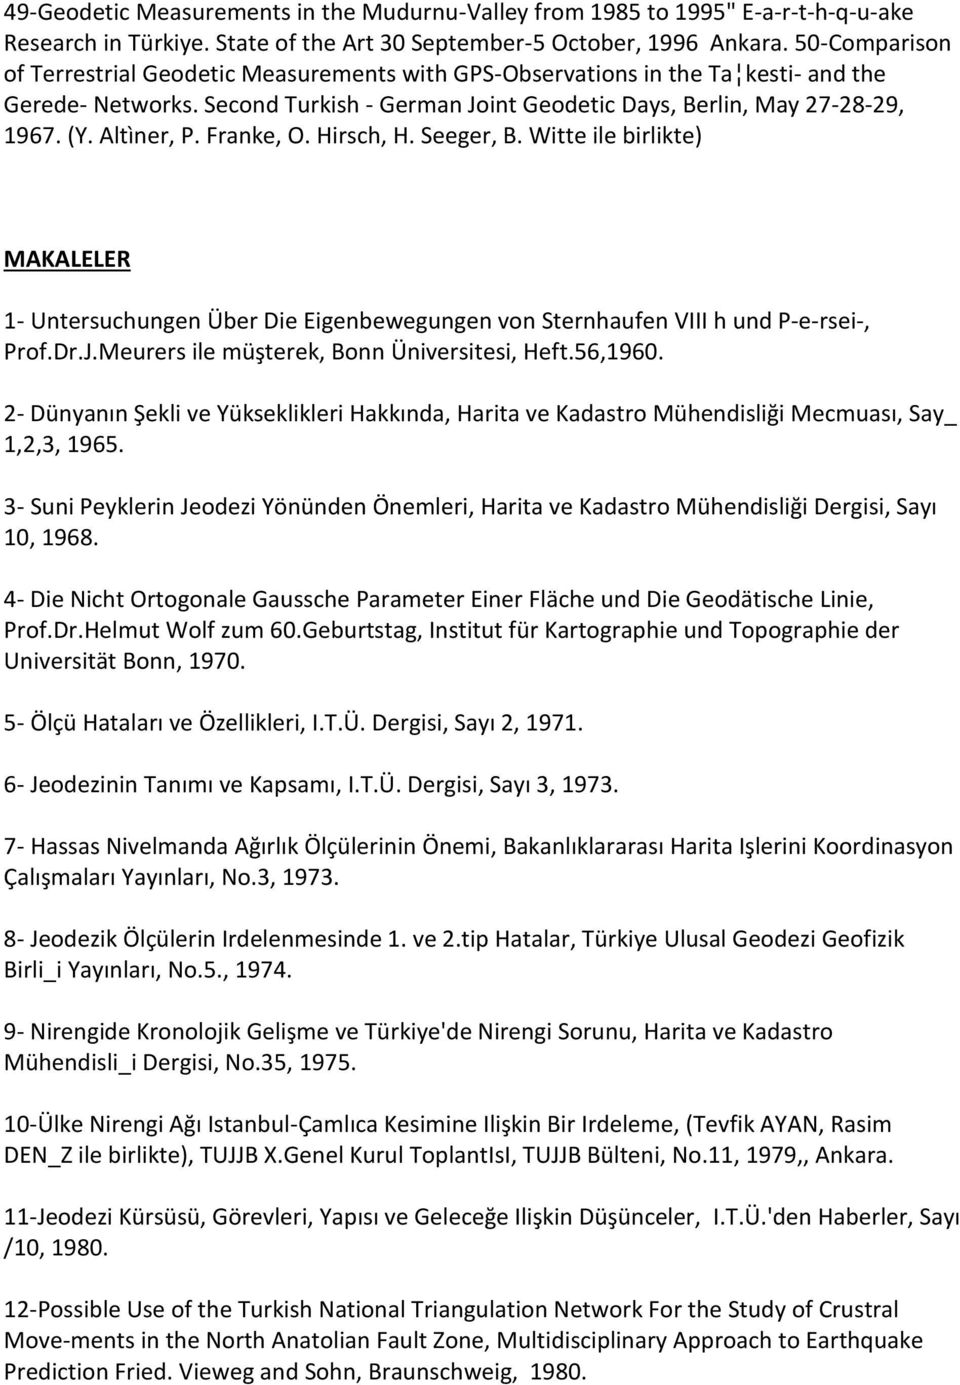 Altìner, P. Franke, O. Hirsch, H. Seeger, B. Witte ile birlikte) MAKALELER 1- Untersuchungen Über Die Eigenbewegungen von Sternhaufen VIII h und P e rsei, Prof.Dr.J.